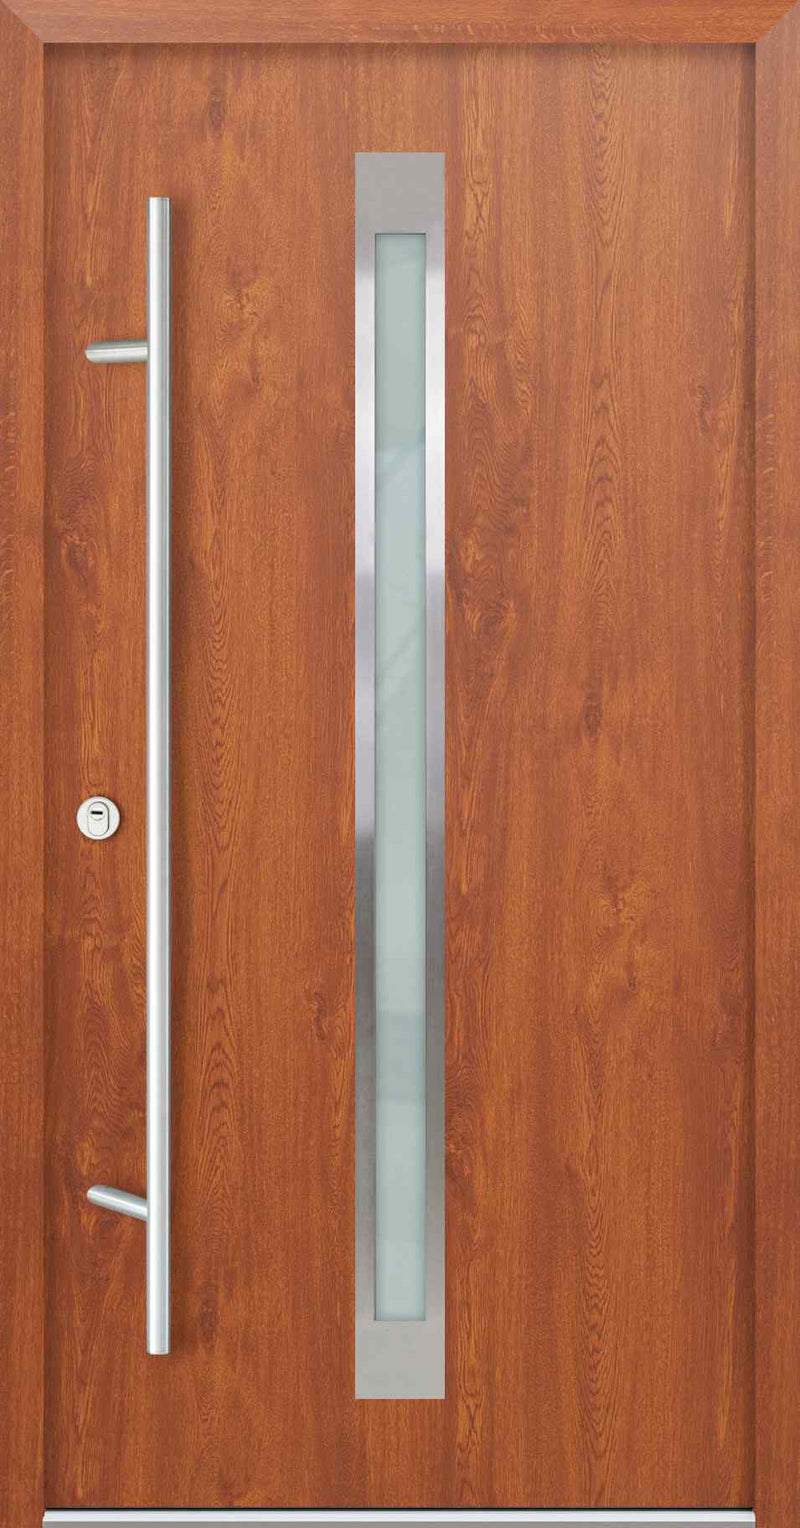 Turenwerke AC68 Design 10 Steel Door - Golden Oak